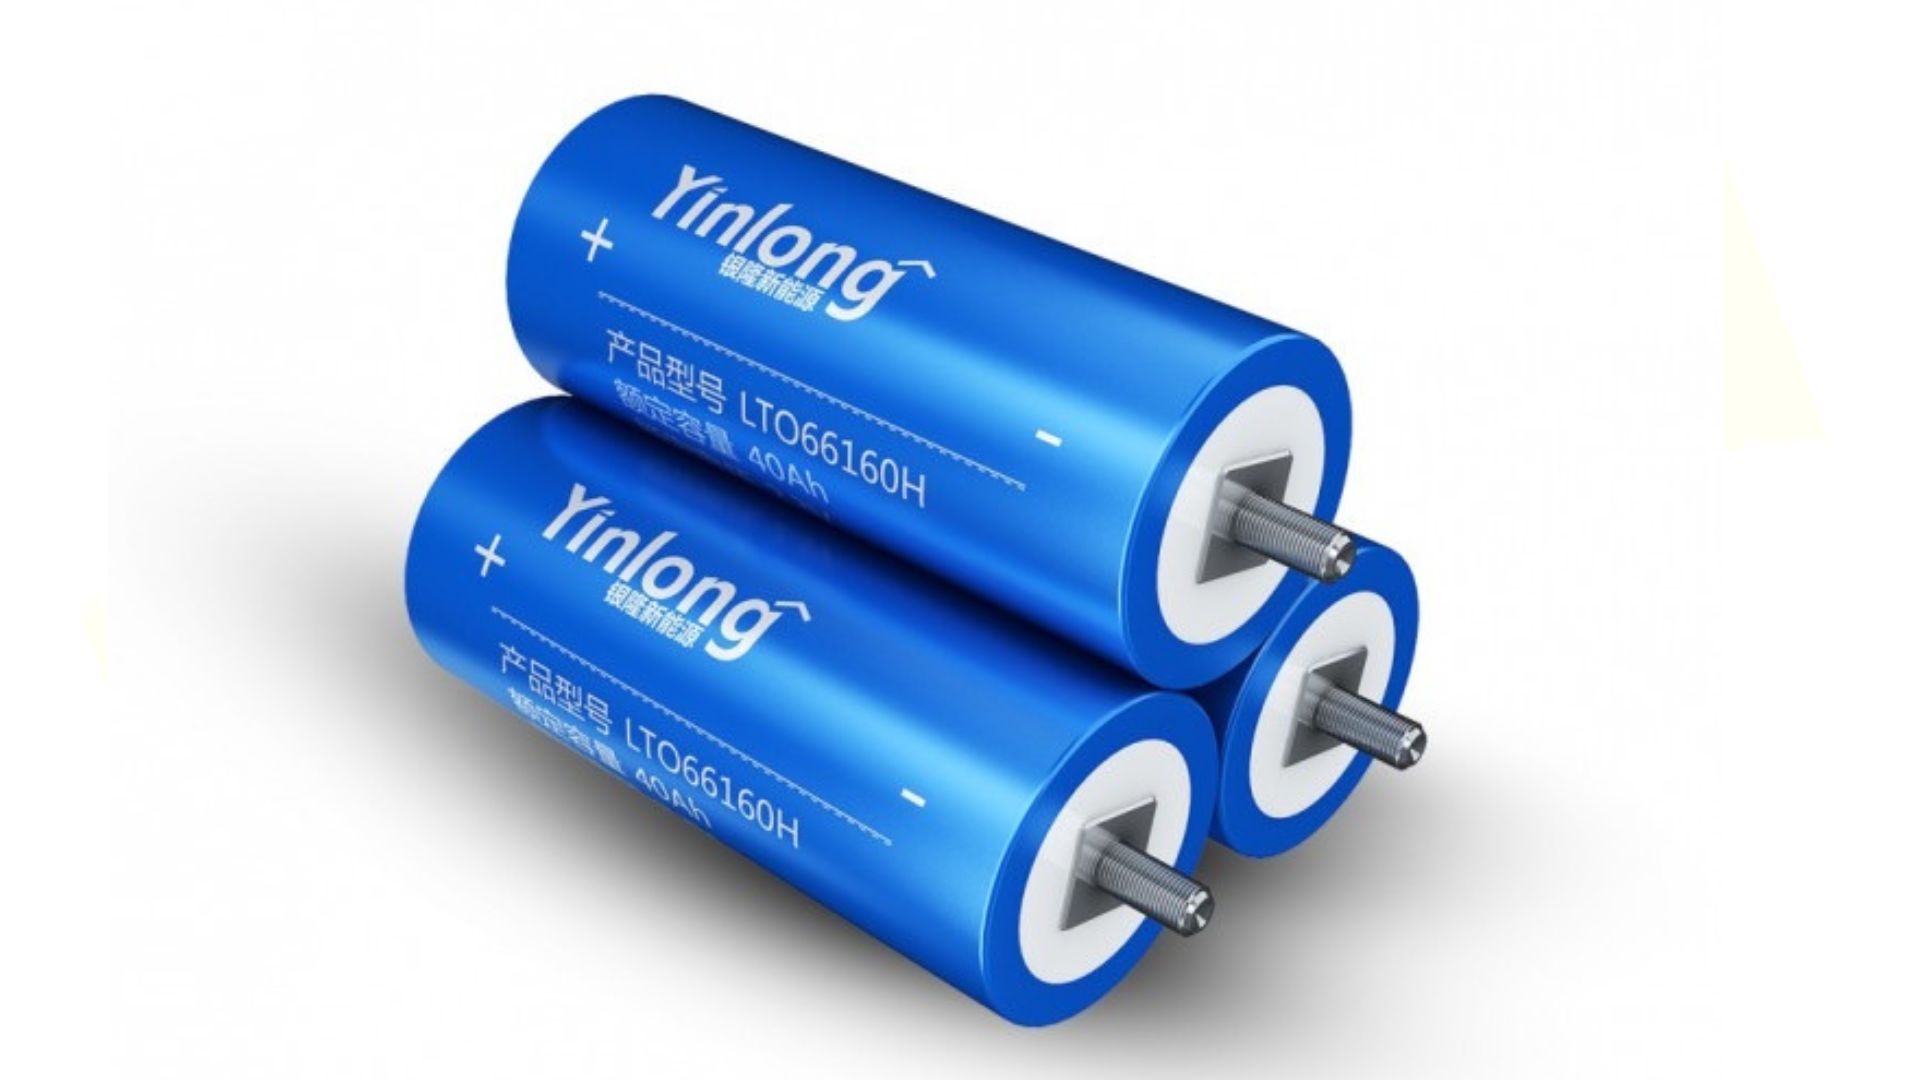 https://e-vehicleinfo.com/lto-batteries-advantage-disadvantage-and-manufacturers/